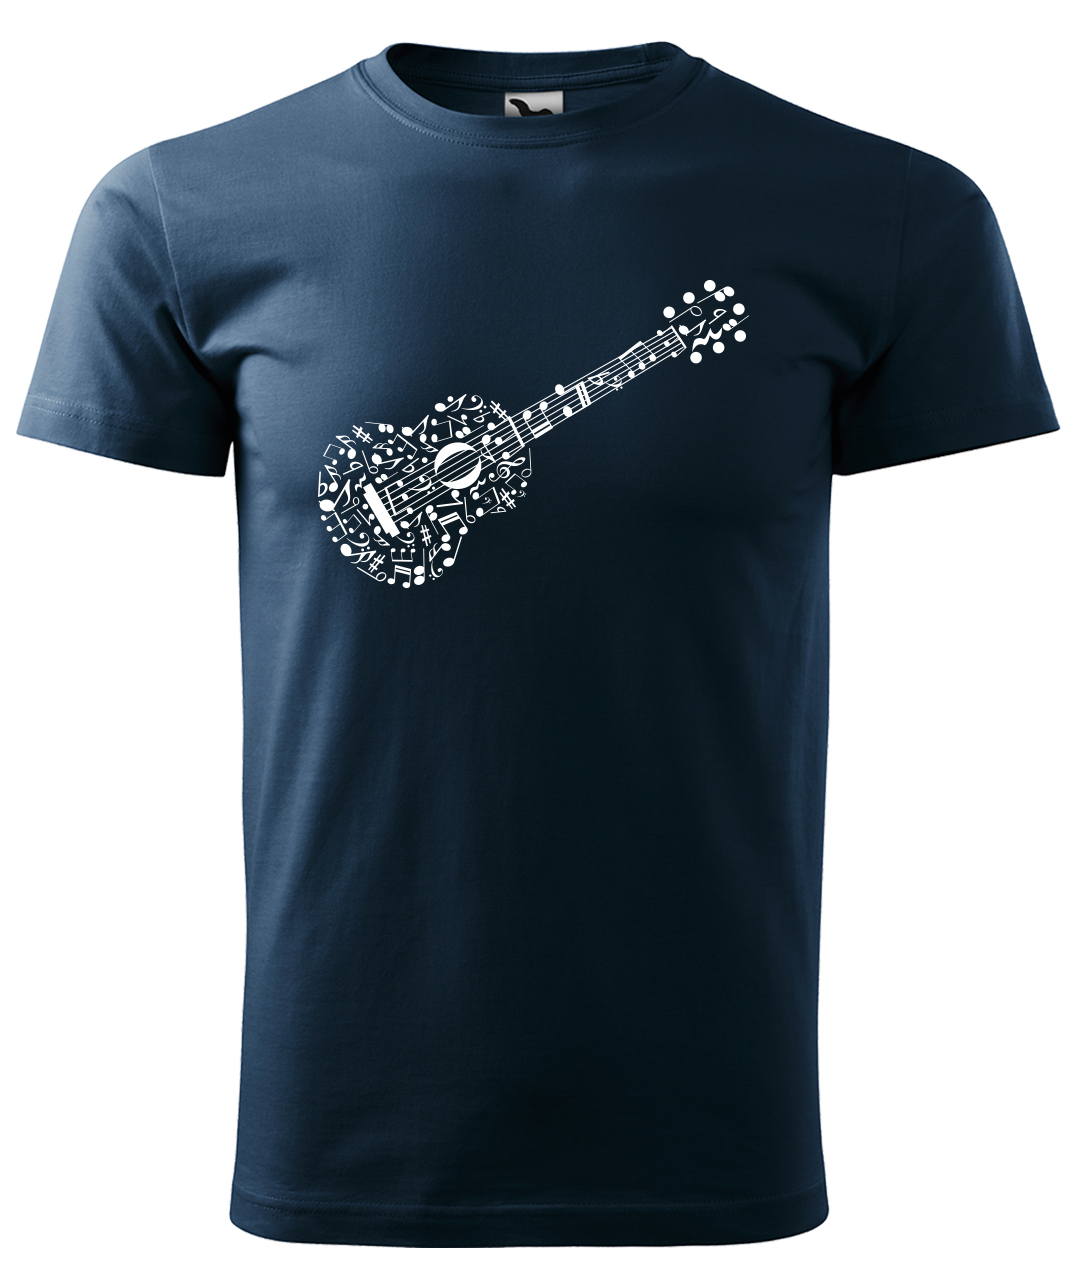 Dětské tričko s kytarou - Kytara z not Velikost: 4 roky / 110 cm, Barva: Námořní modrá (02), Délka rukávu: Krátký rukáv